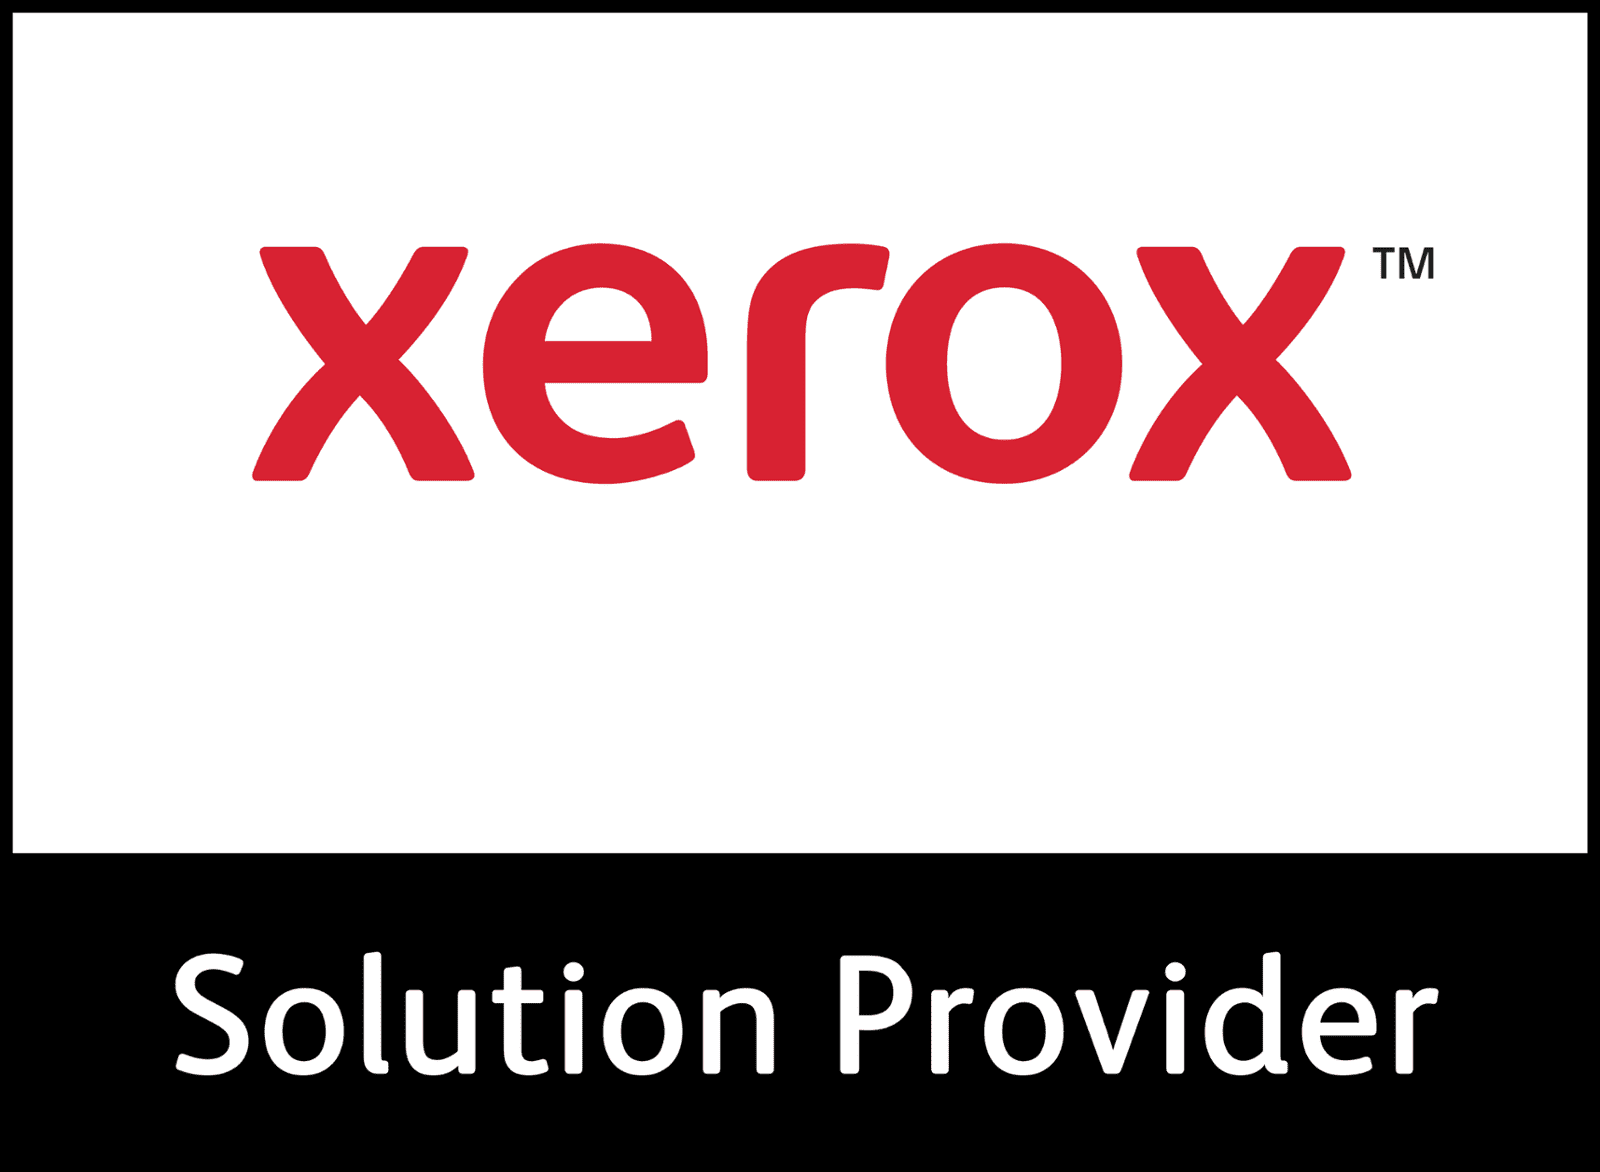 xerox logo in red